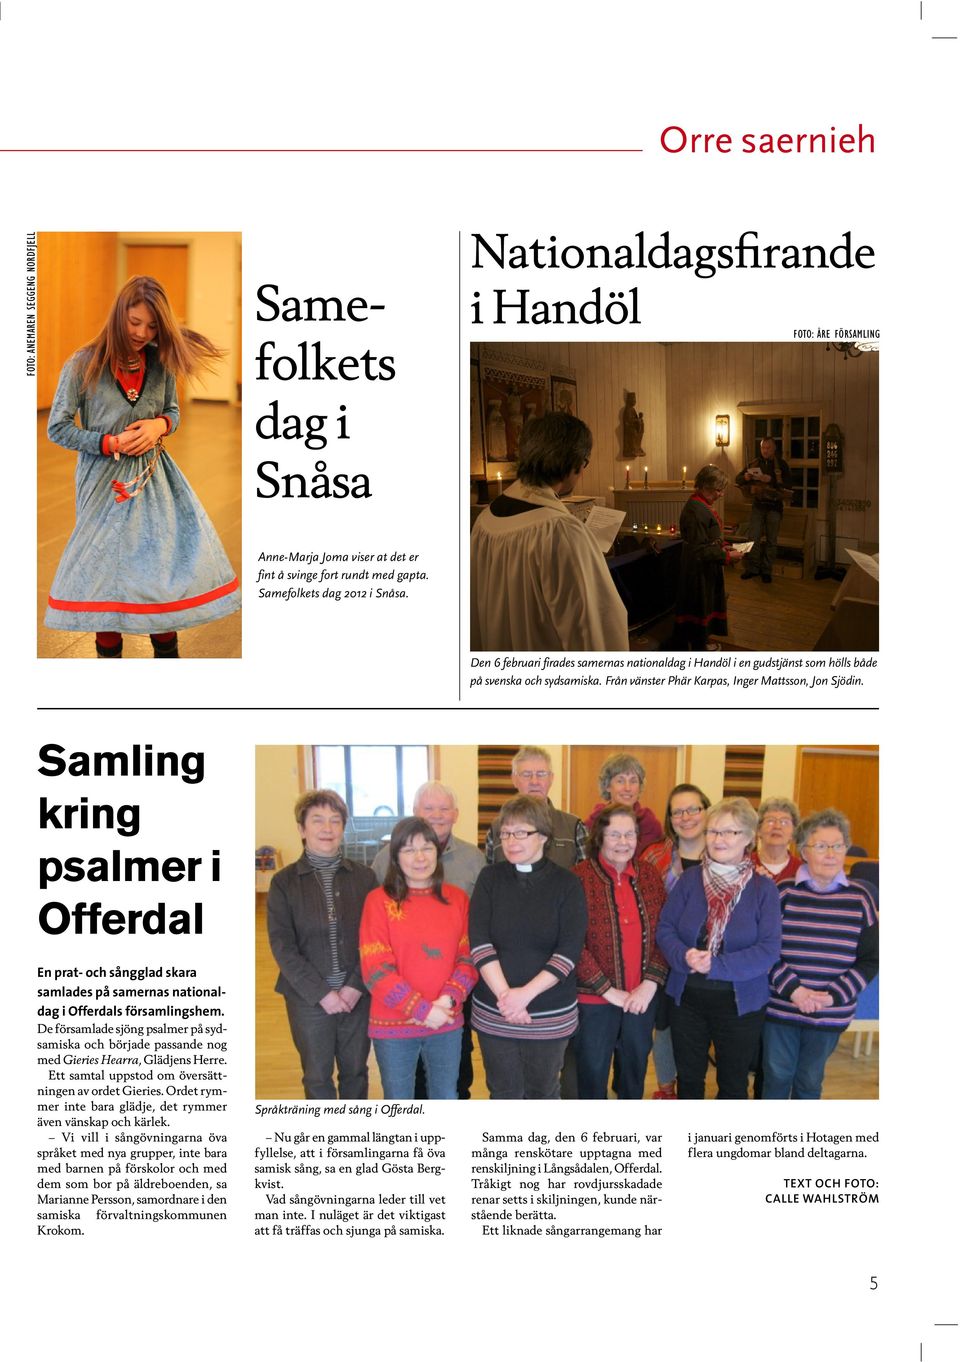 Samling kring psalmer i Offerdal En prat- och sångglad skara samlades på samernas nationaldag i Offerdals församlingshem.